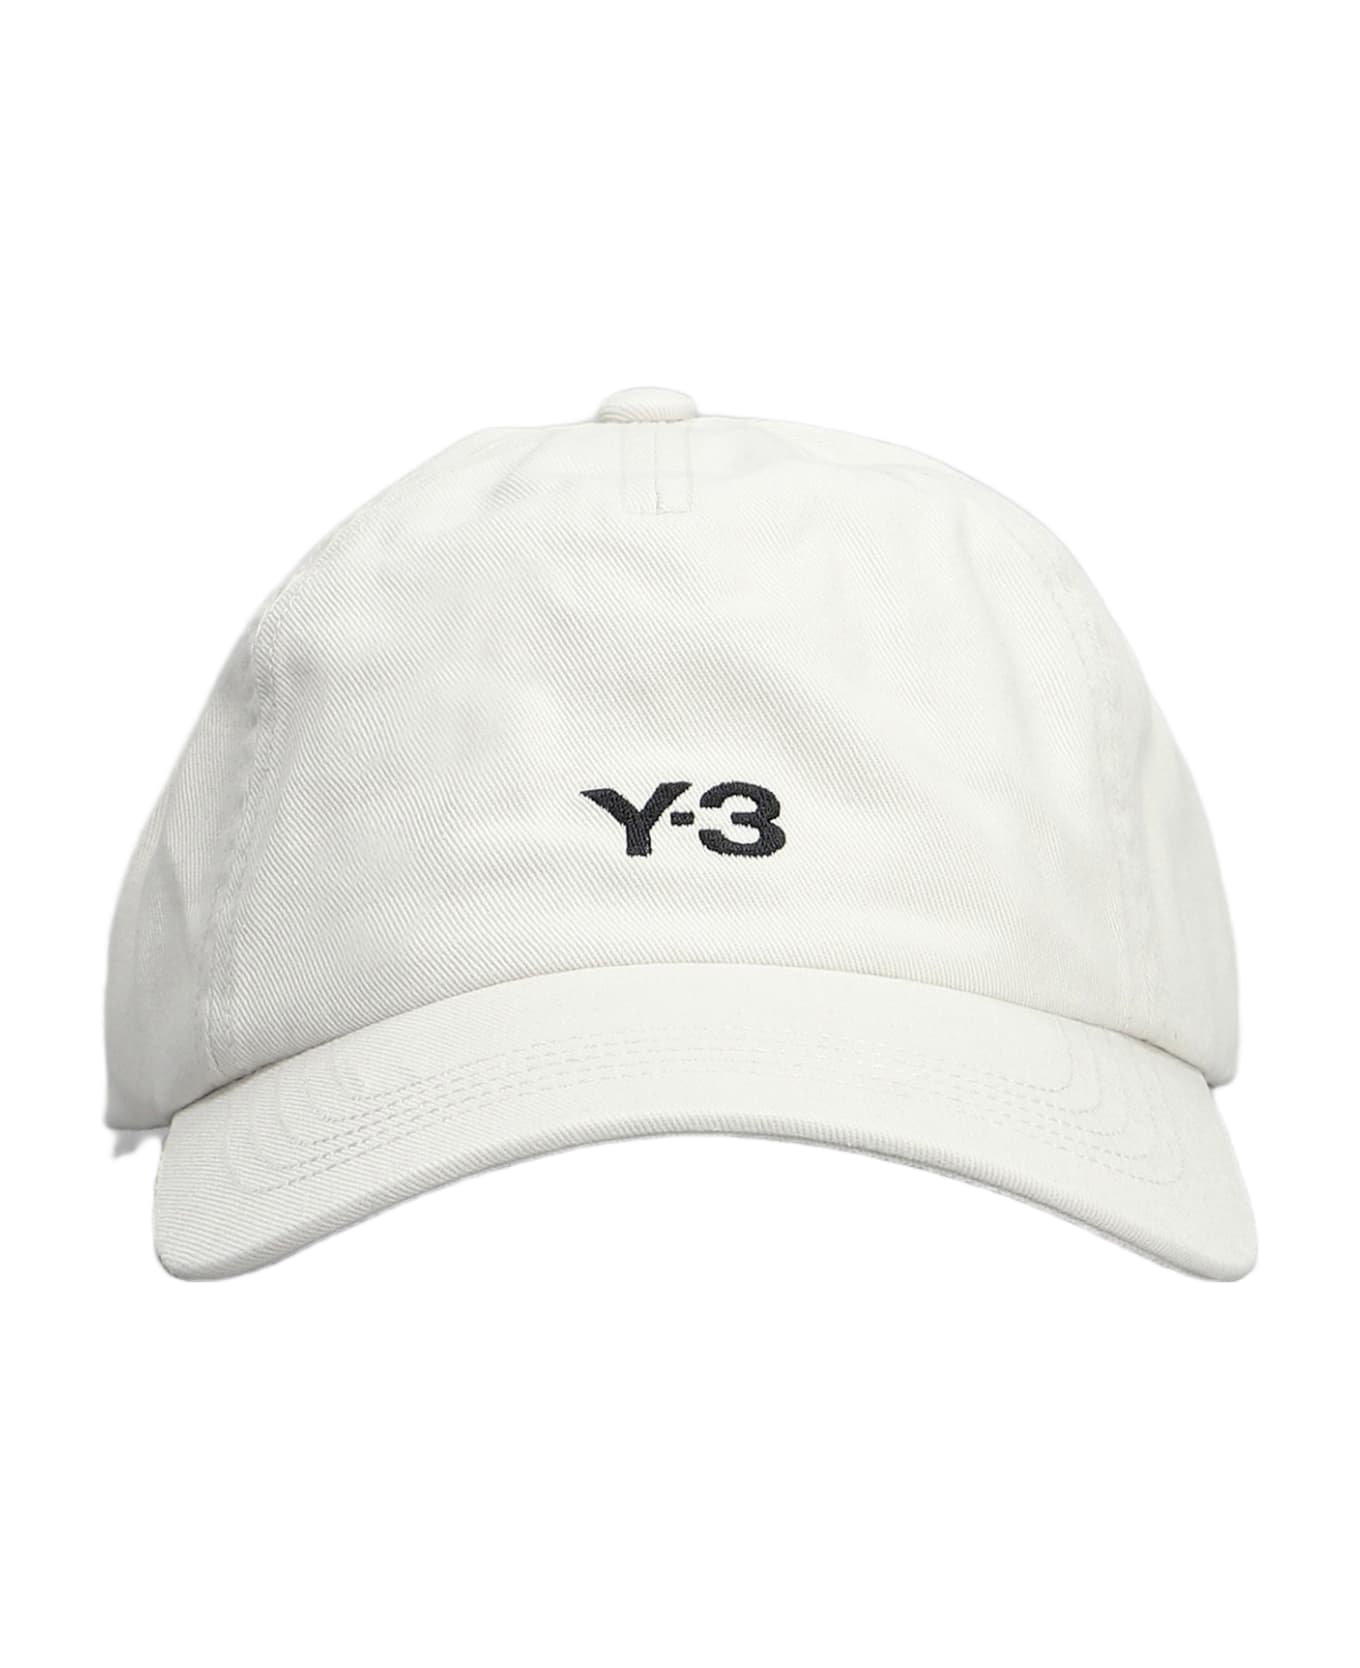 Y-3 Hats In Grey Cotton - grey 帽子